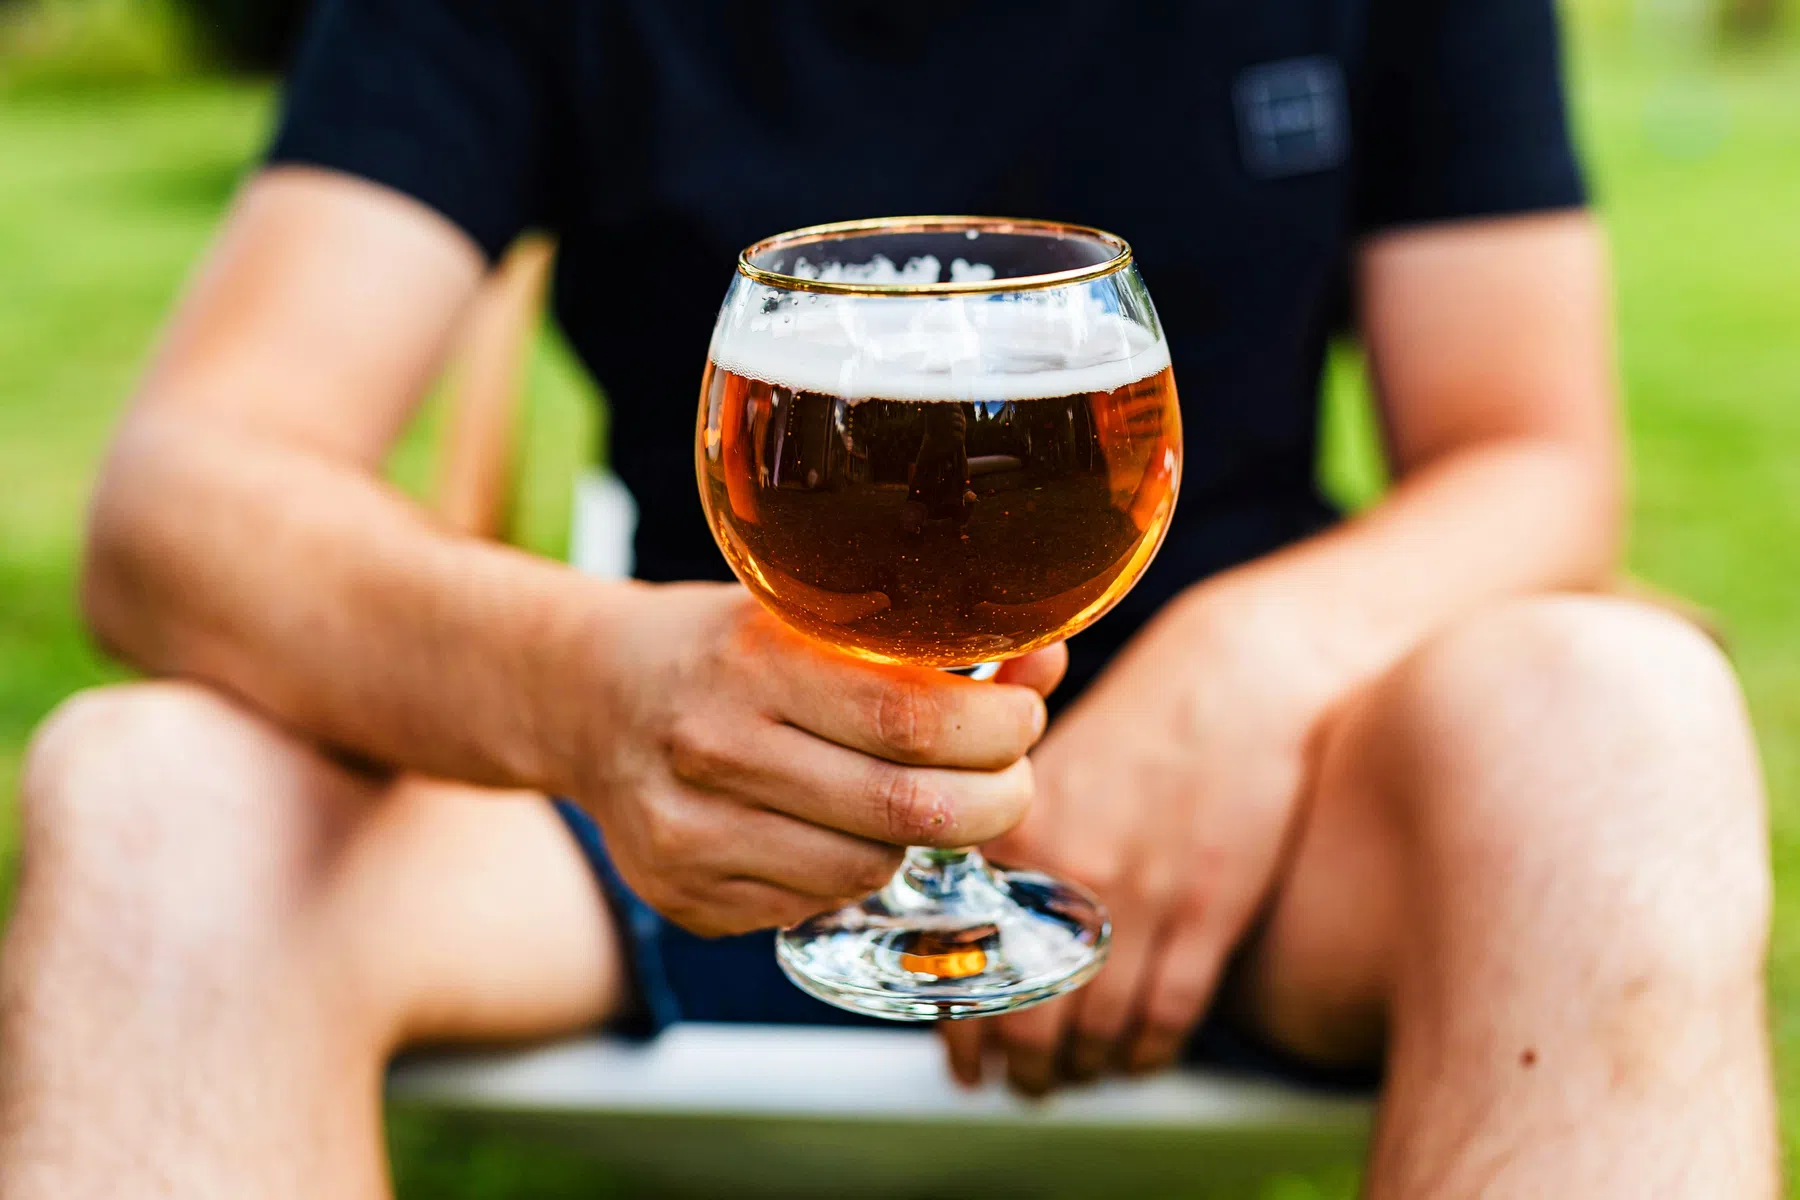 Nieuw Belgisch bier smaakt beter door AI